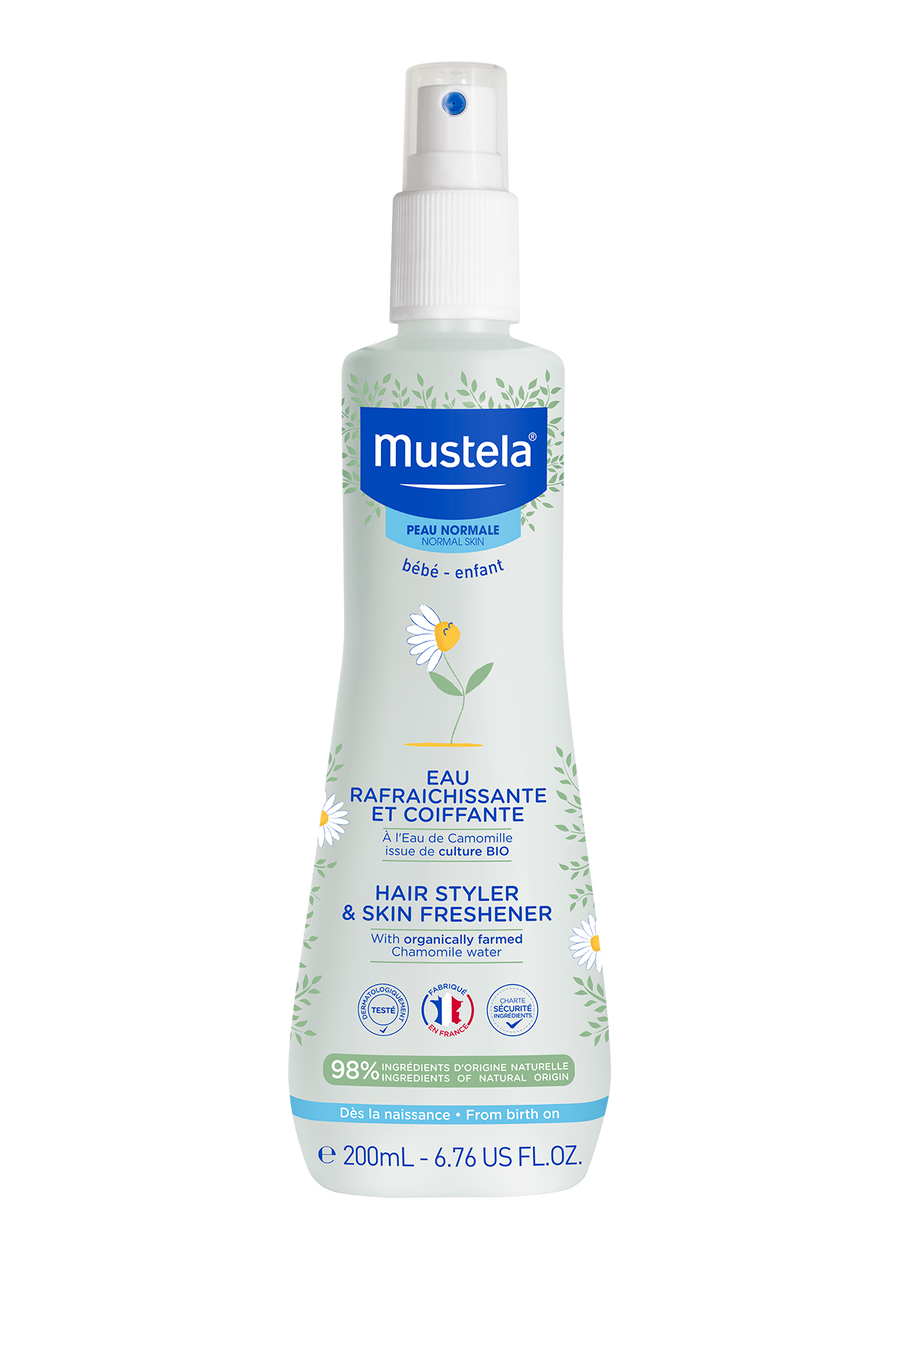 Mustela Baby Hair Styler & Skin freshener with Organic Chamomile Water (200ml)